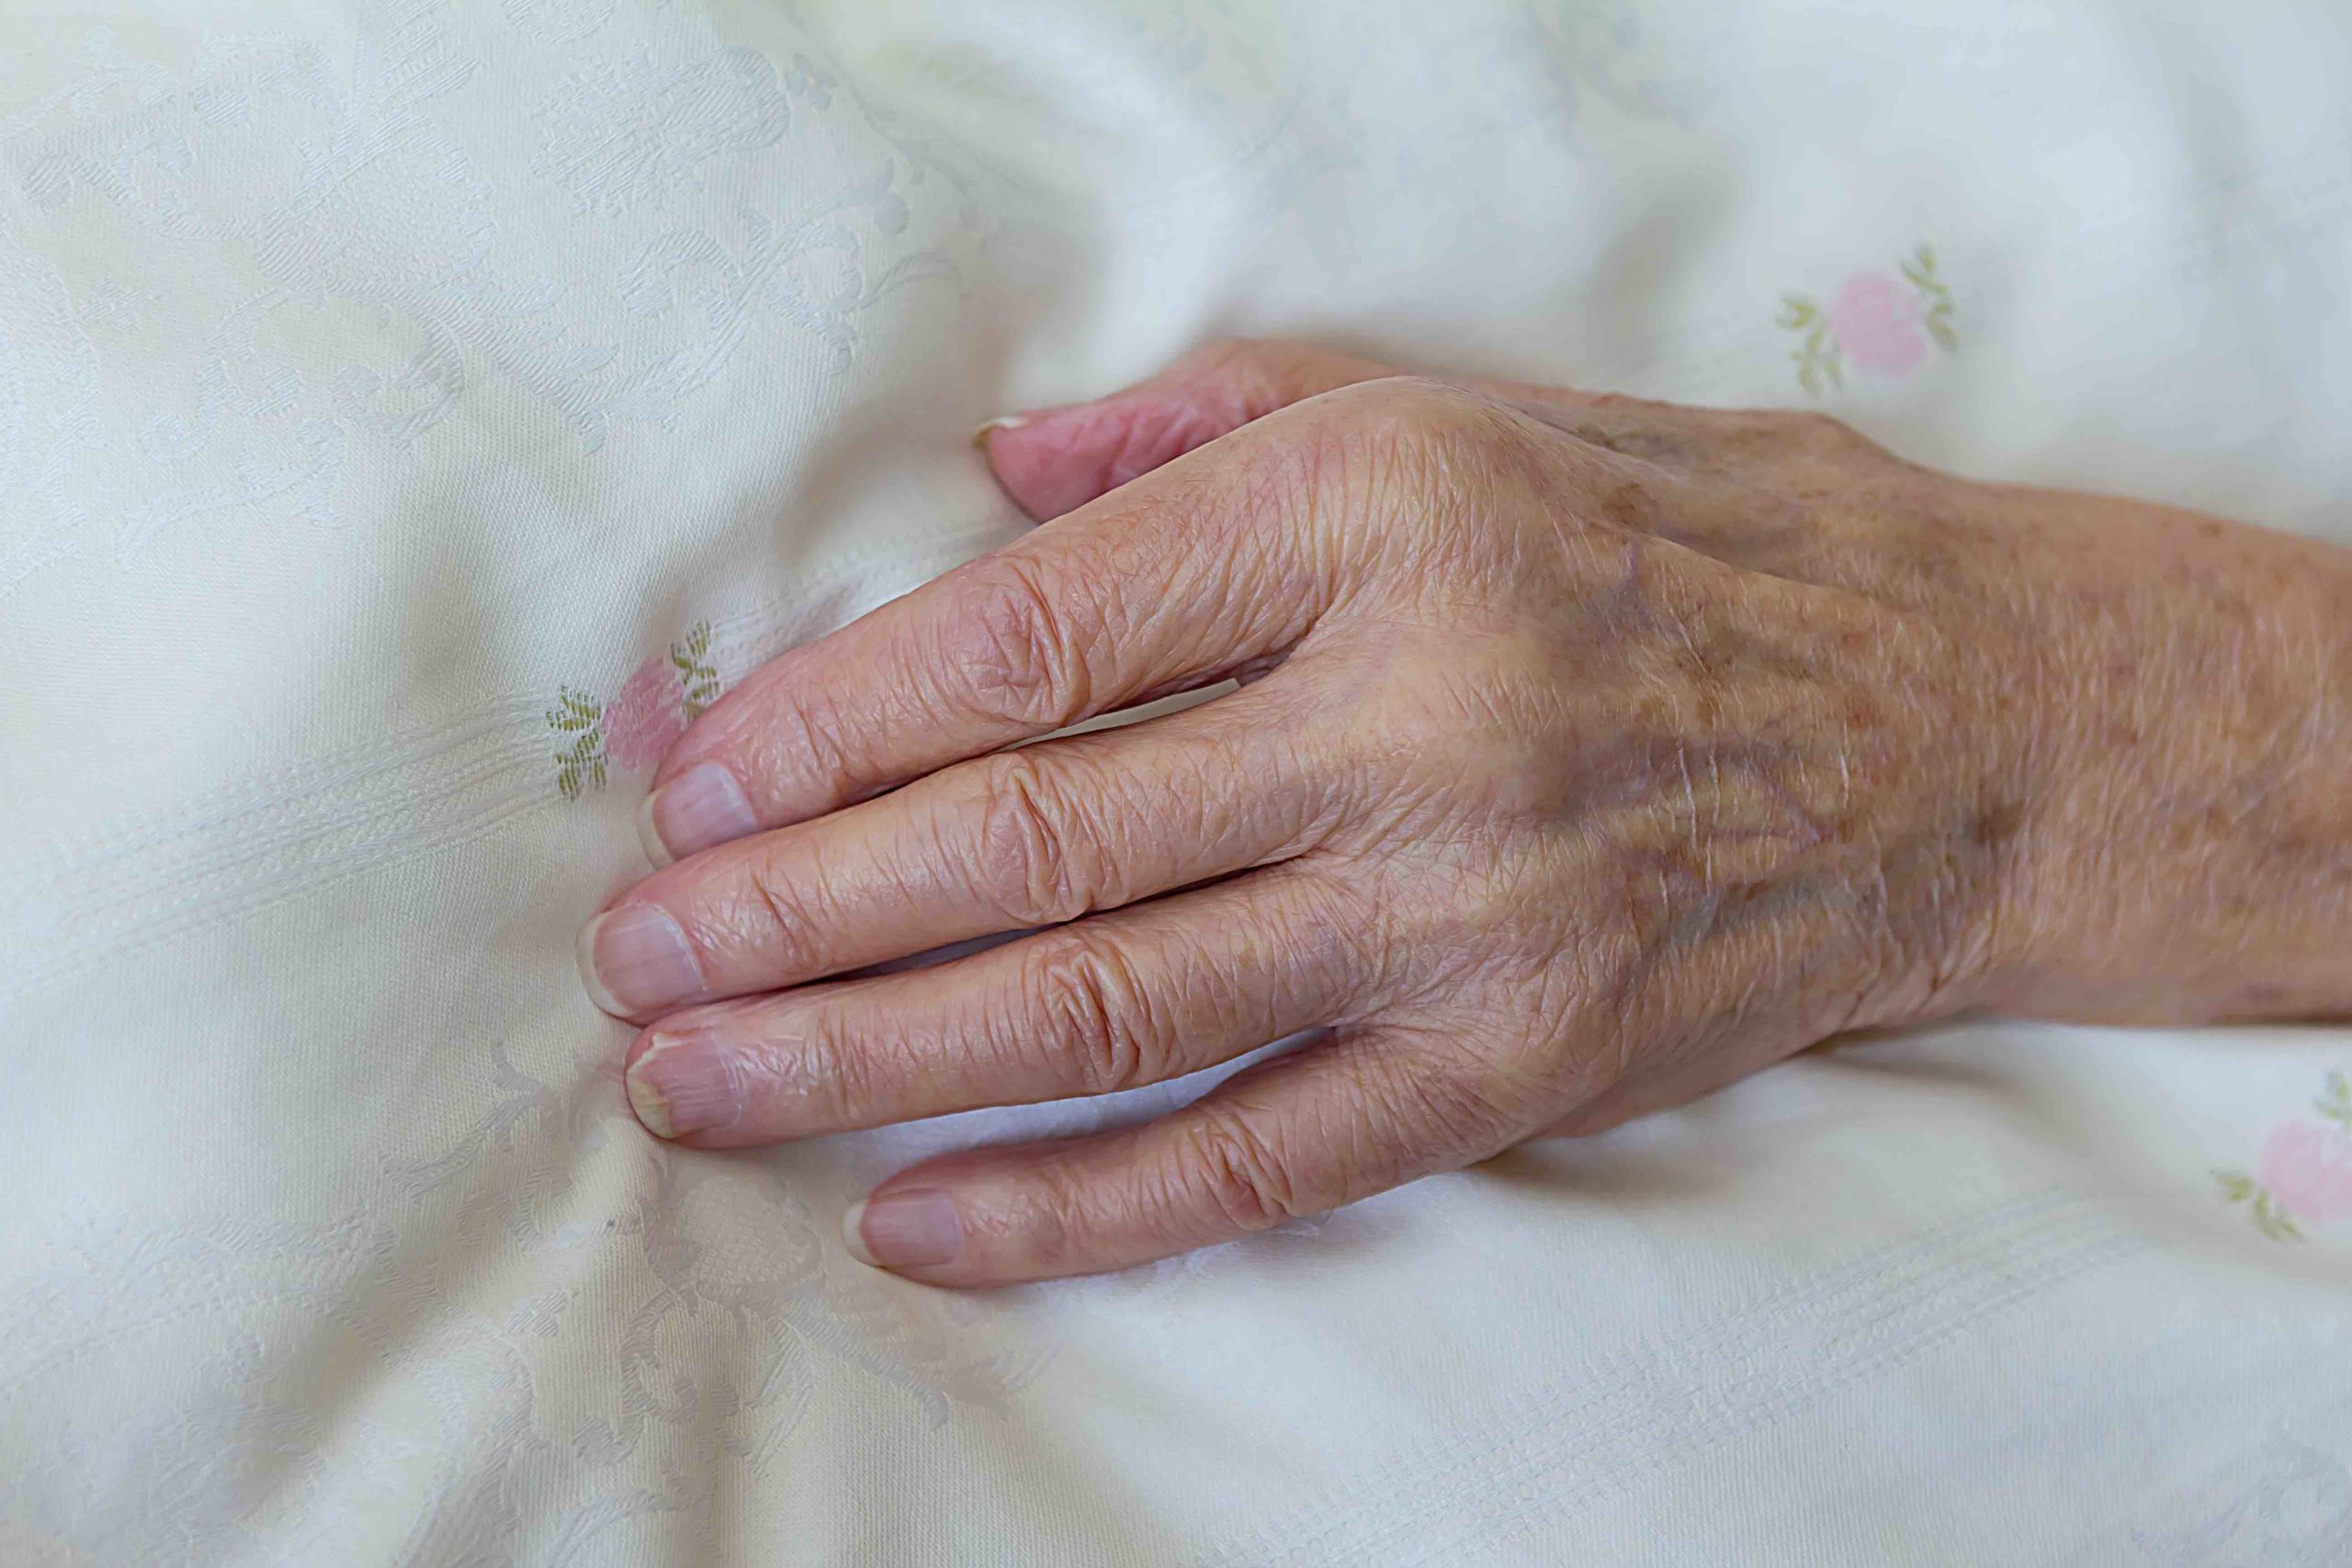 Grundlagen von Palliative Care